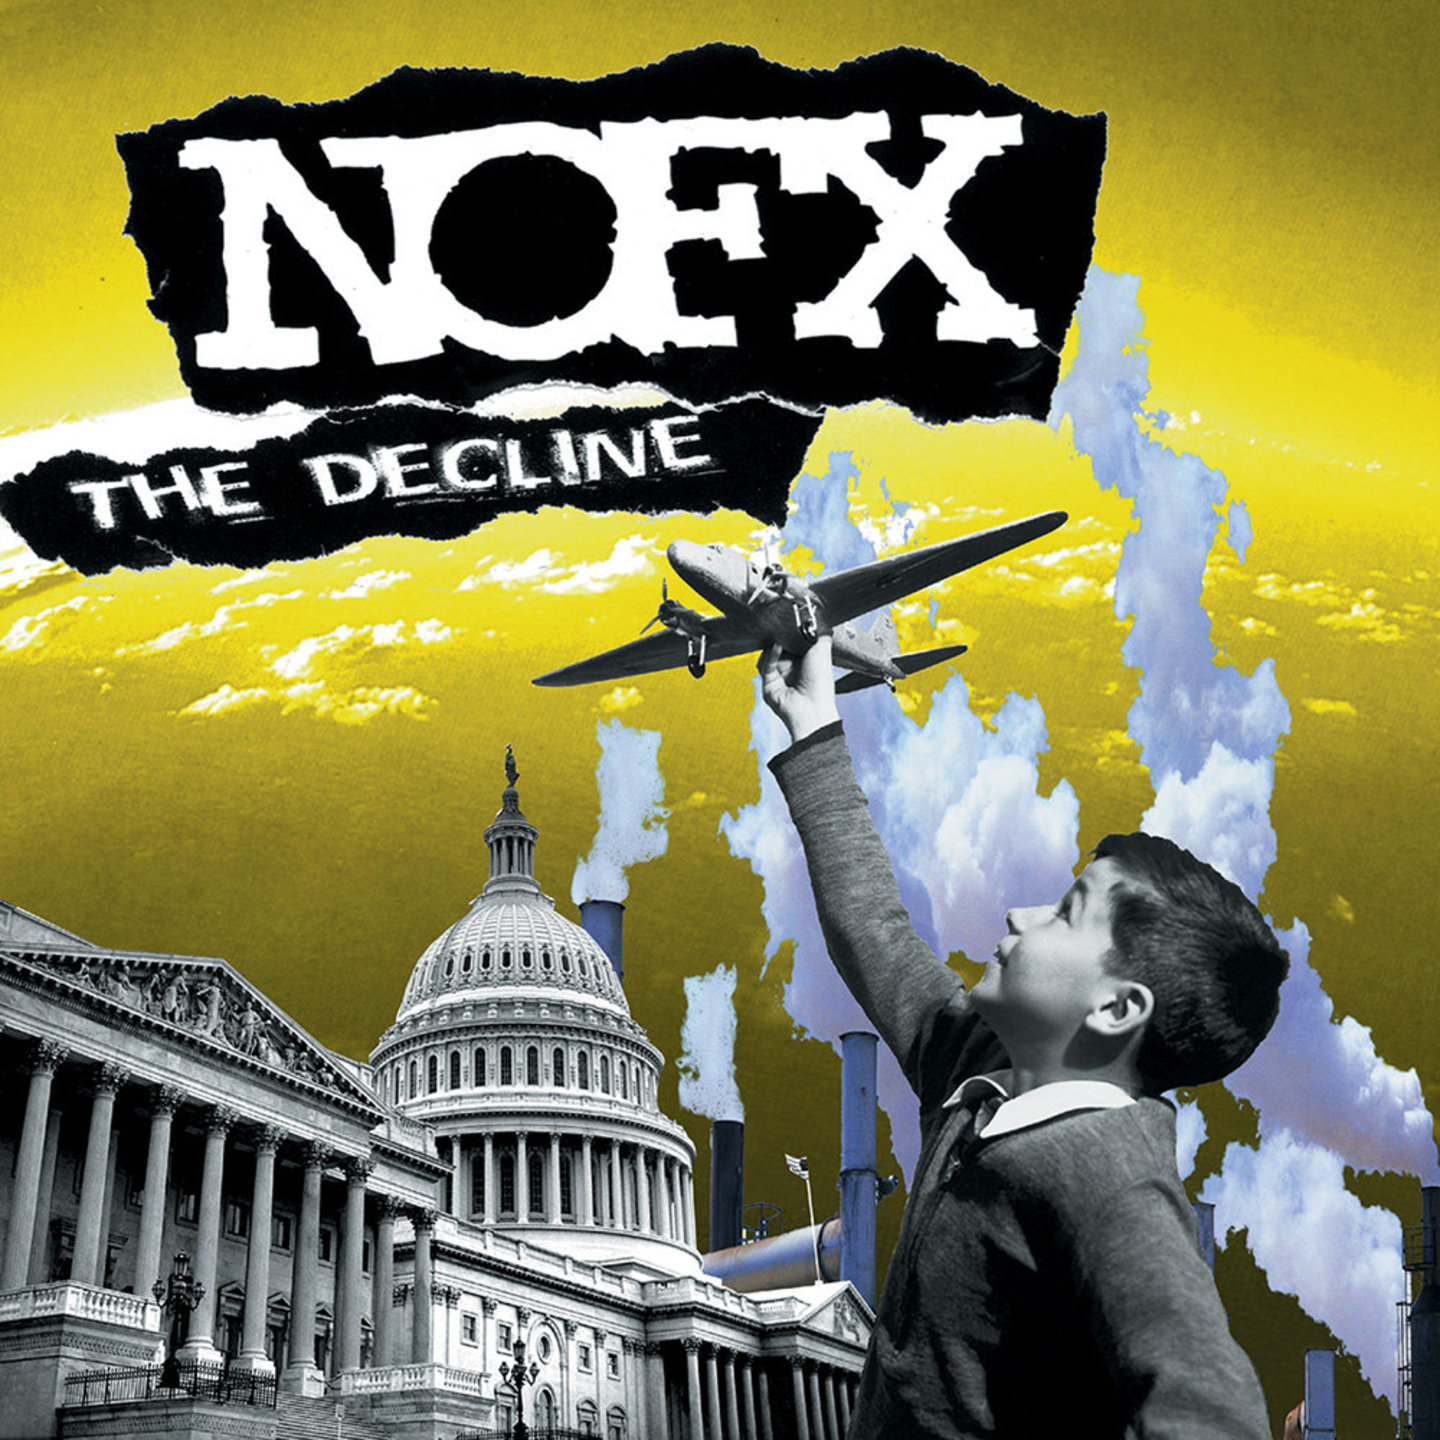 NOFX - The Decline 12"